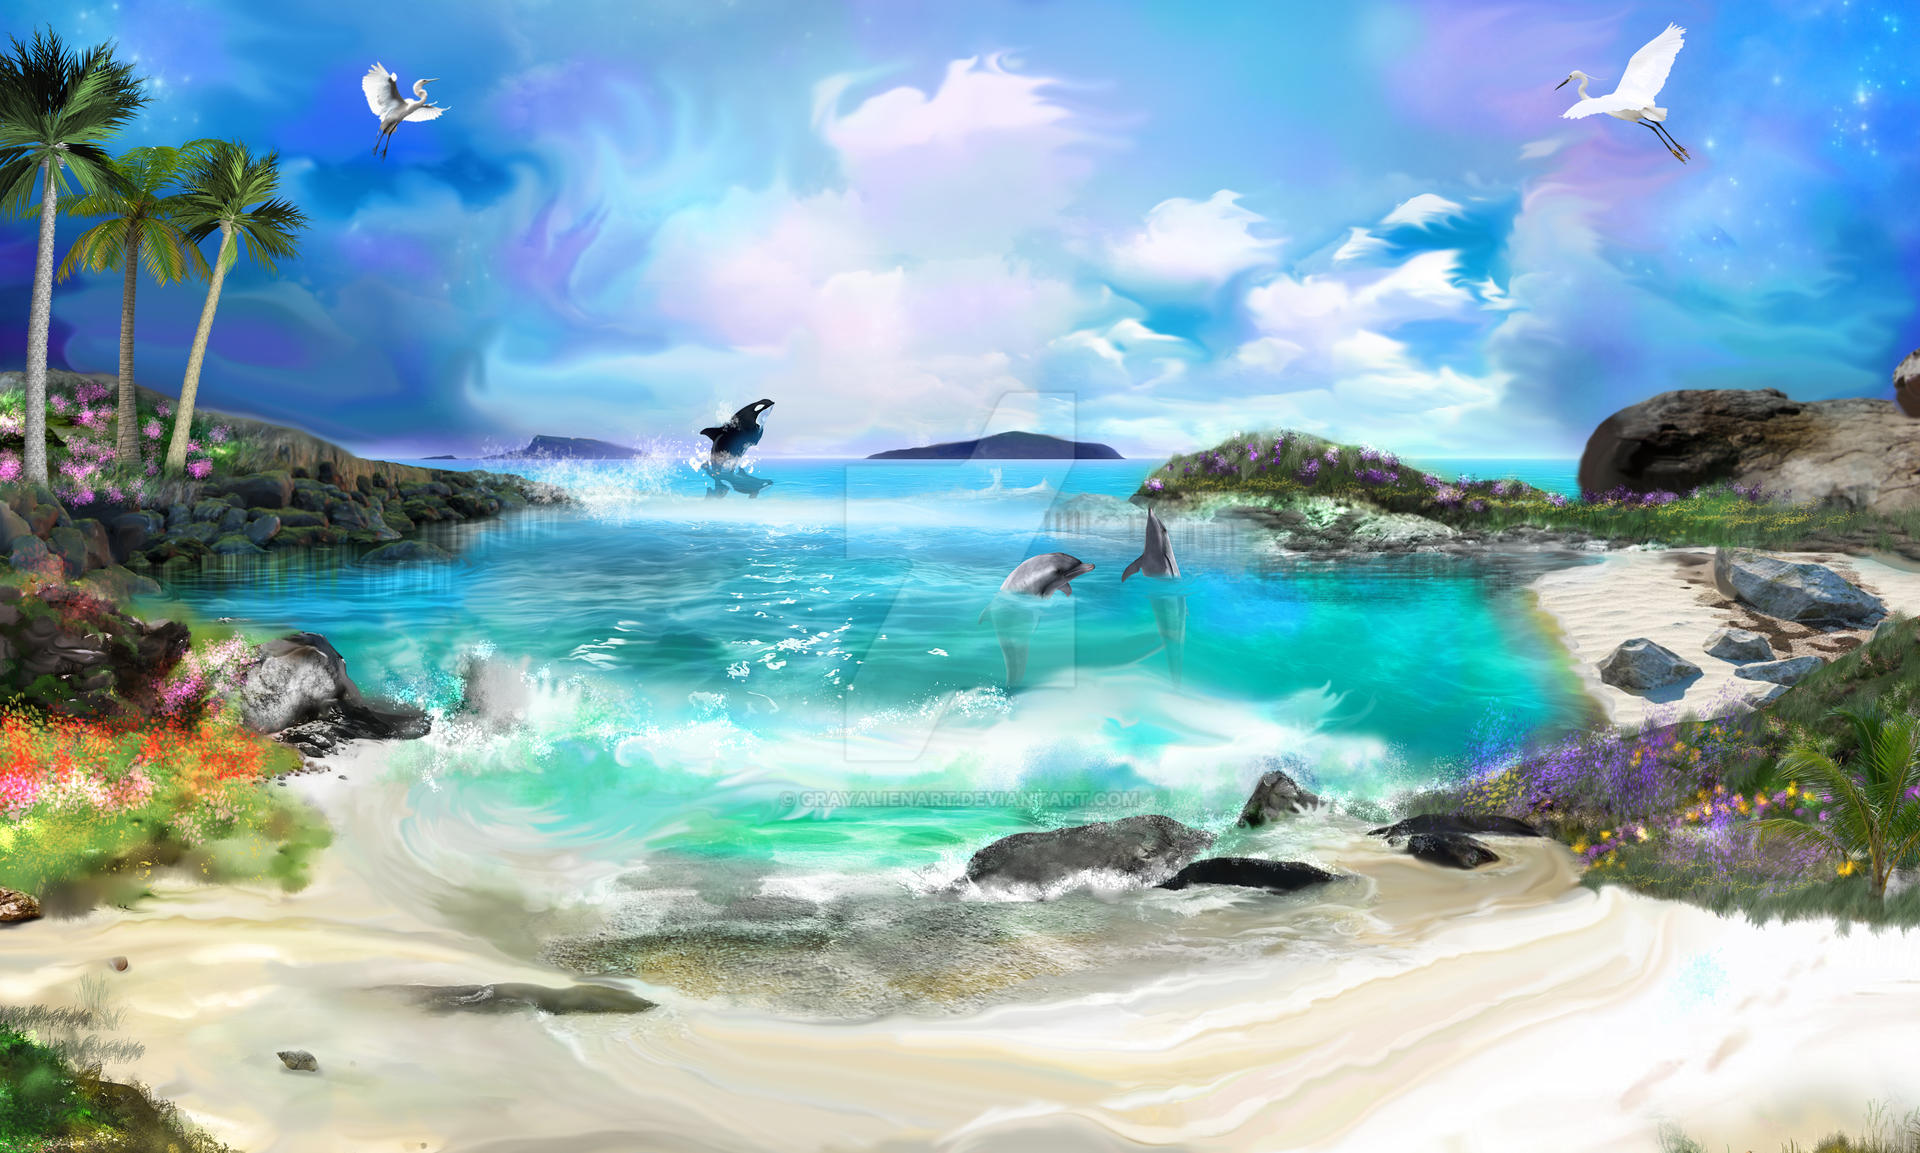 Lagoon of Serenity by GrayAlienArt on DeviantArt